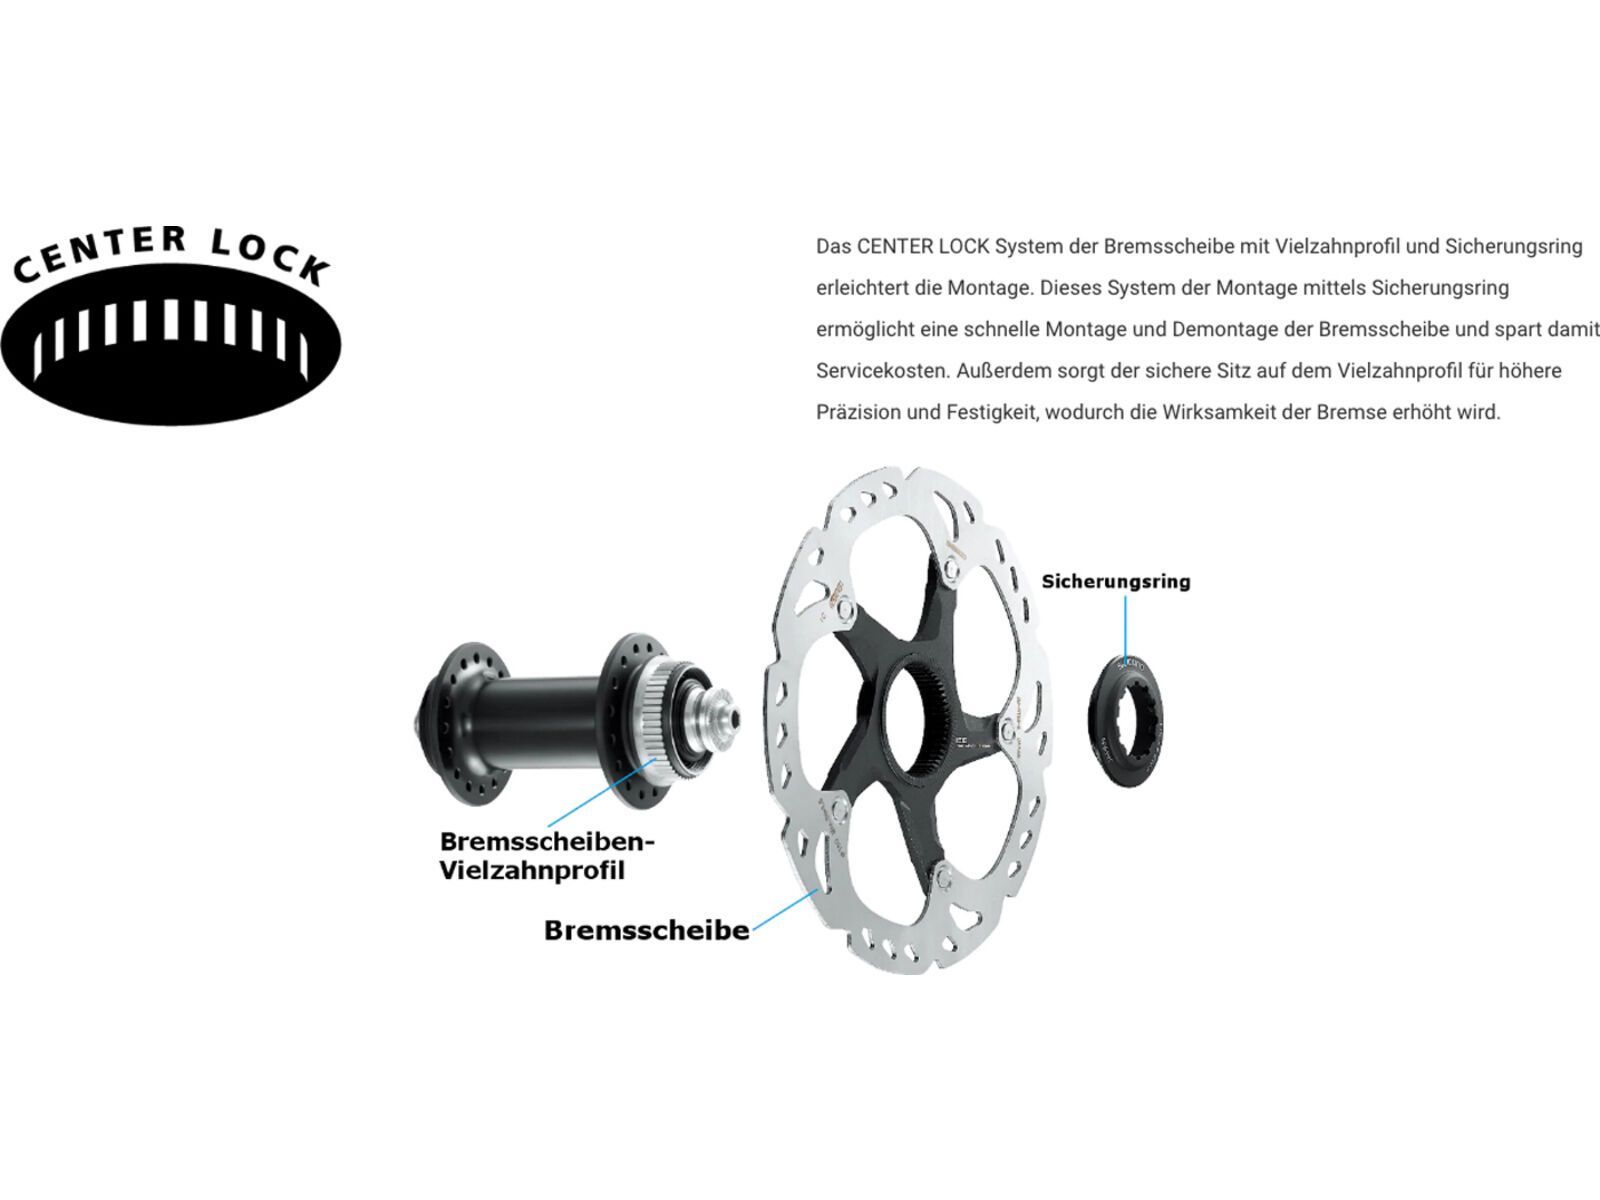 Shimano RT-MT800 Center-Lock Bremsscheibe inkl. Magnet kaufen